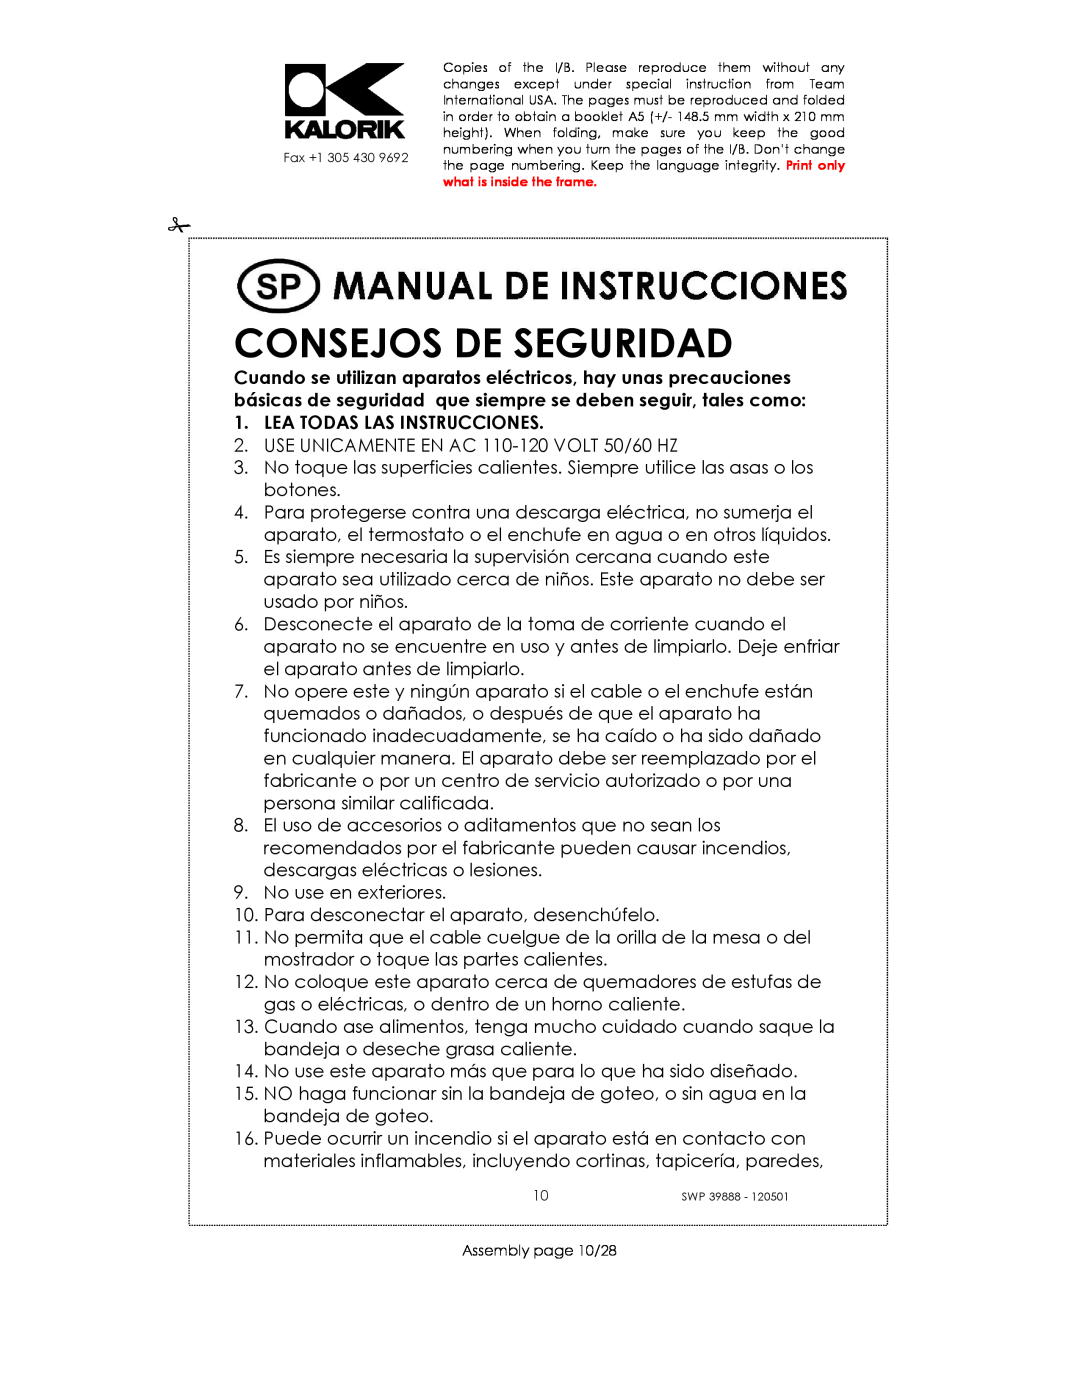 Kalorik SWP 39888 manual Consejos De Seguridad, Lea Todas Las Instrucciones 